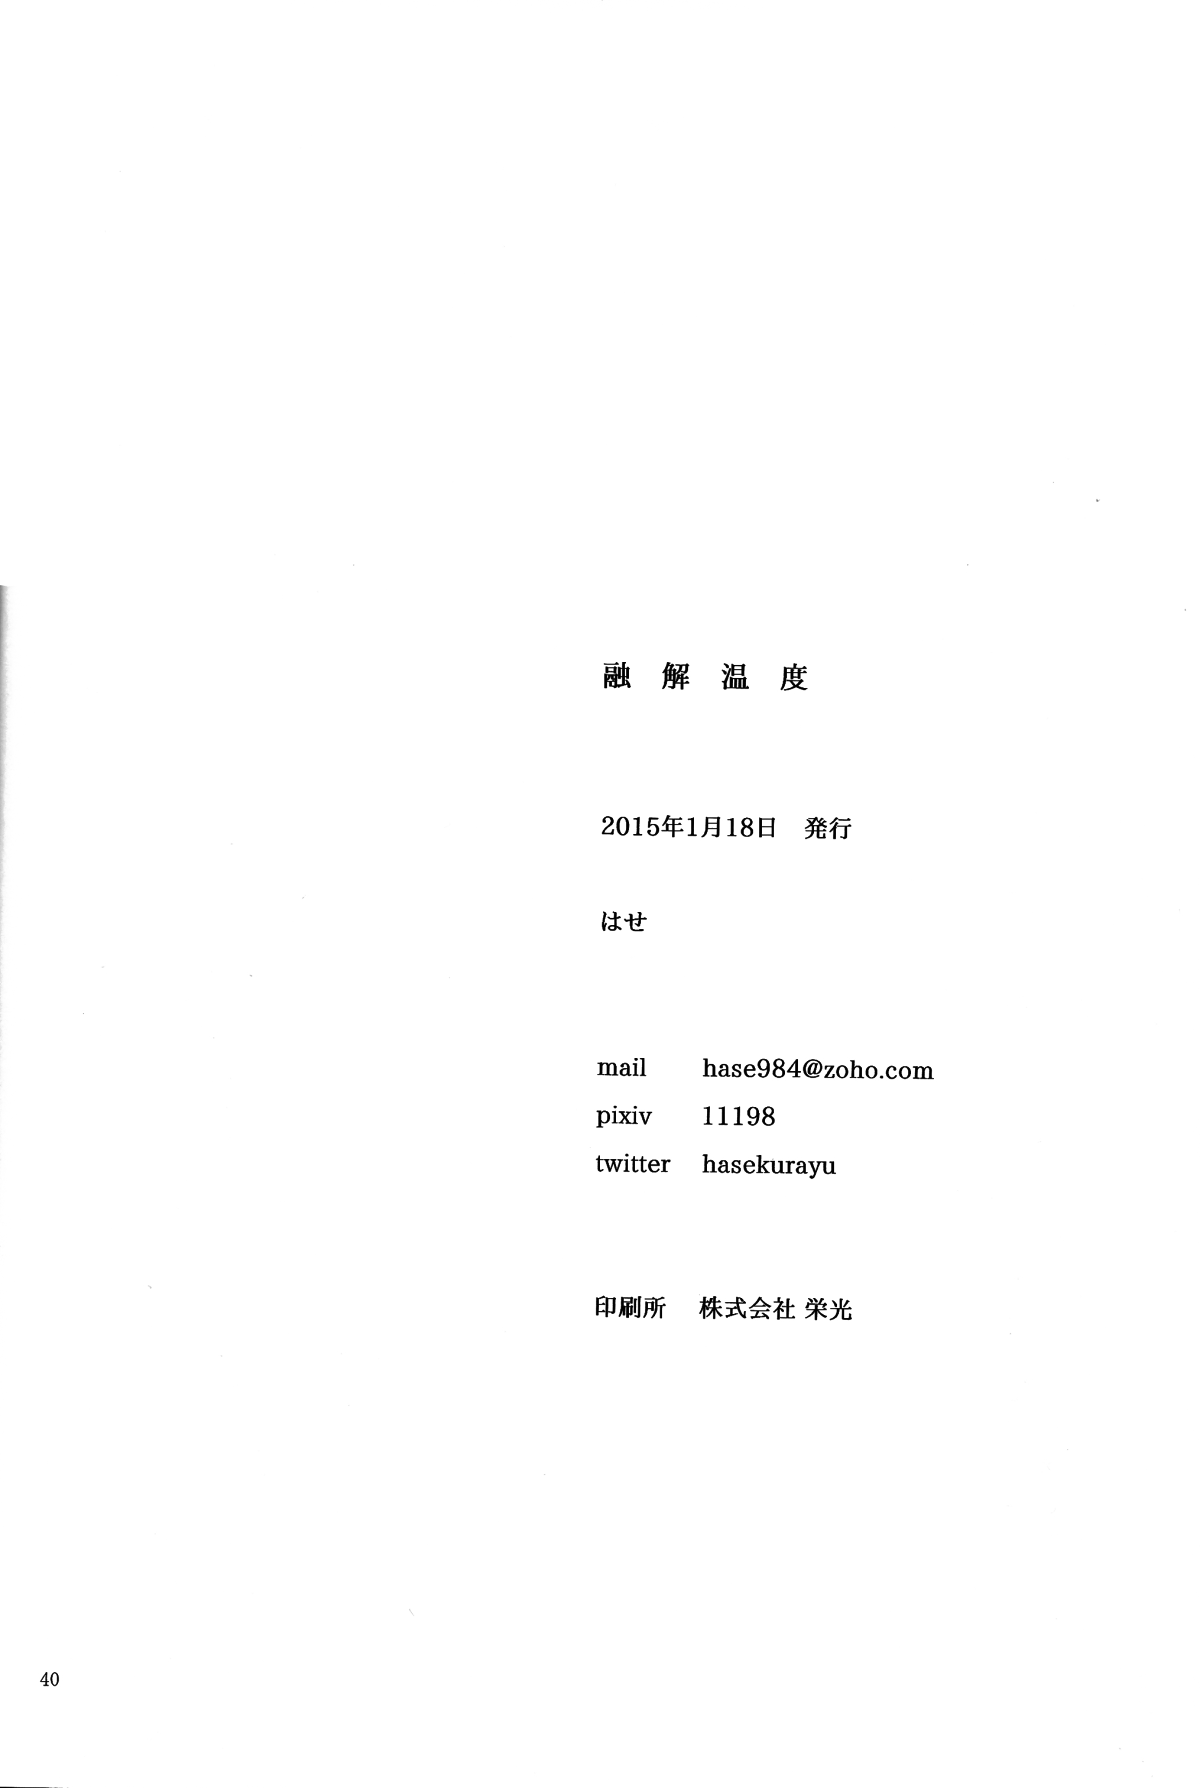 (ZERO no Hakobune) [Nagaya (Hase)] Yuukai Ondo - Melting Temperature (Aldnoah.Zero) [Chinese] [瑞利散射研究會feat.@AcSimmonsn汉化] (ZEROの方舟) [ながや (はせ)] 融解温度 (アルドノア・ゼロ) [中文翻譯]